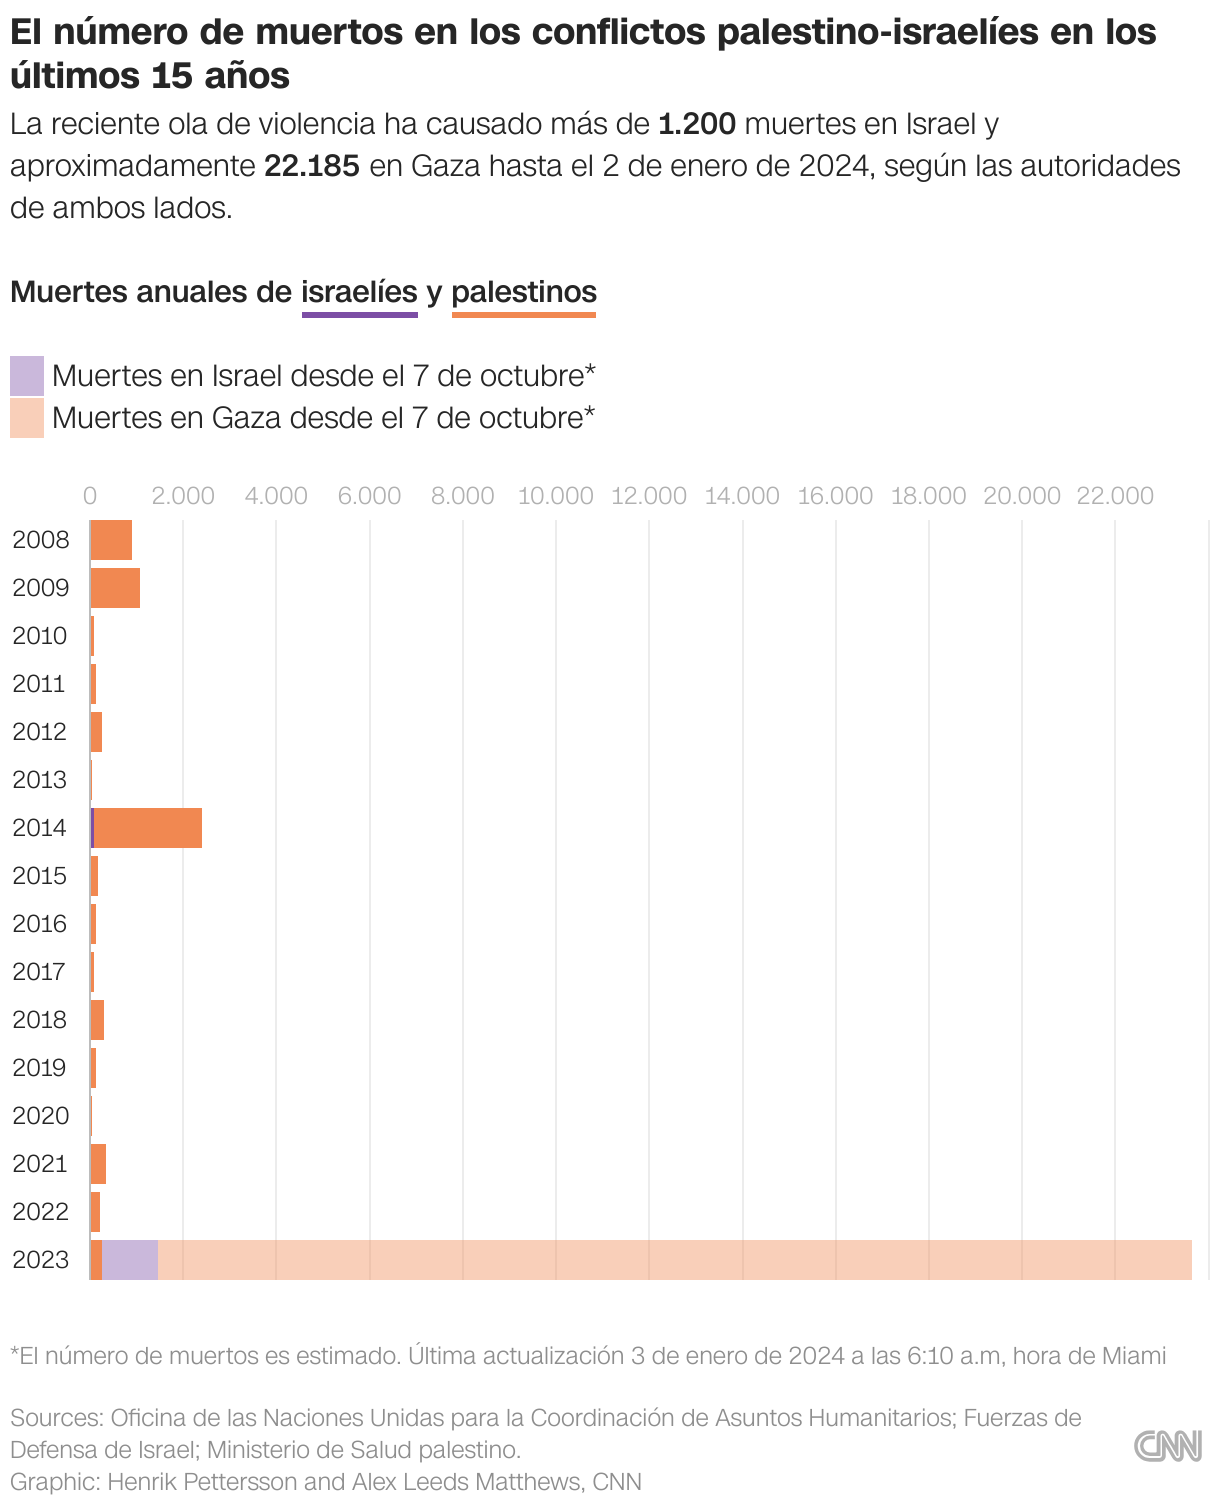 Gráfico de barras que muestra las muertes anuales en el conflicto palestino-israelí desde 2008, así como las muertes identificadas en el conflicto reciente.